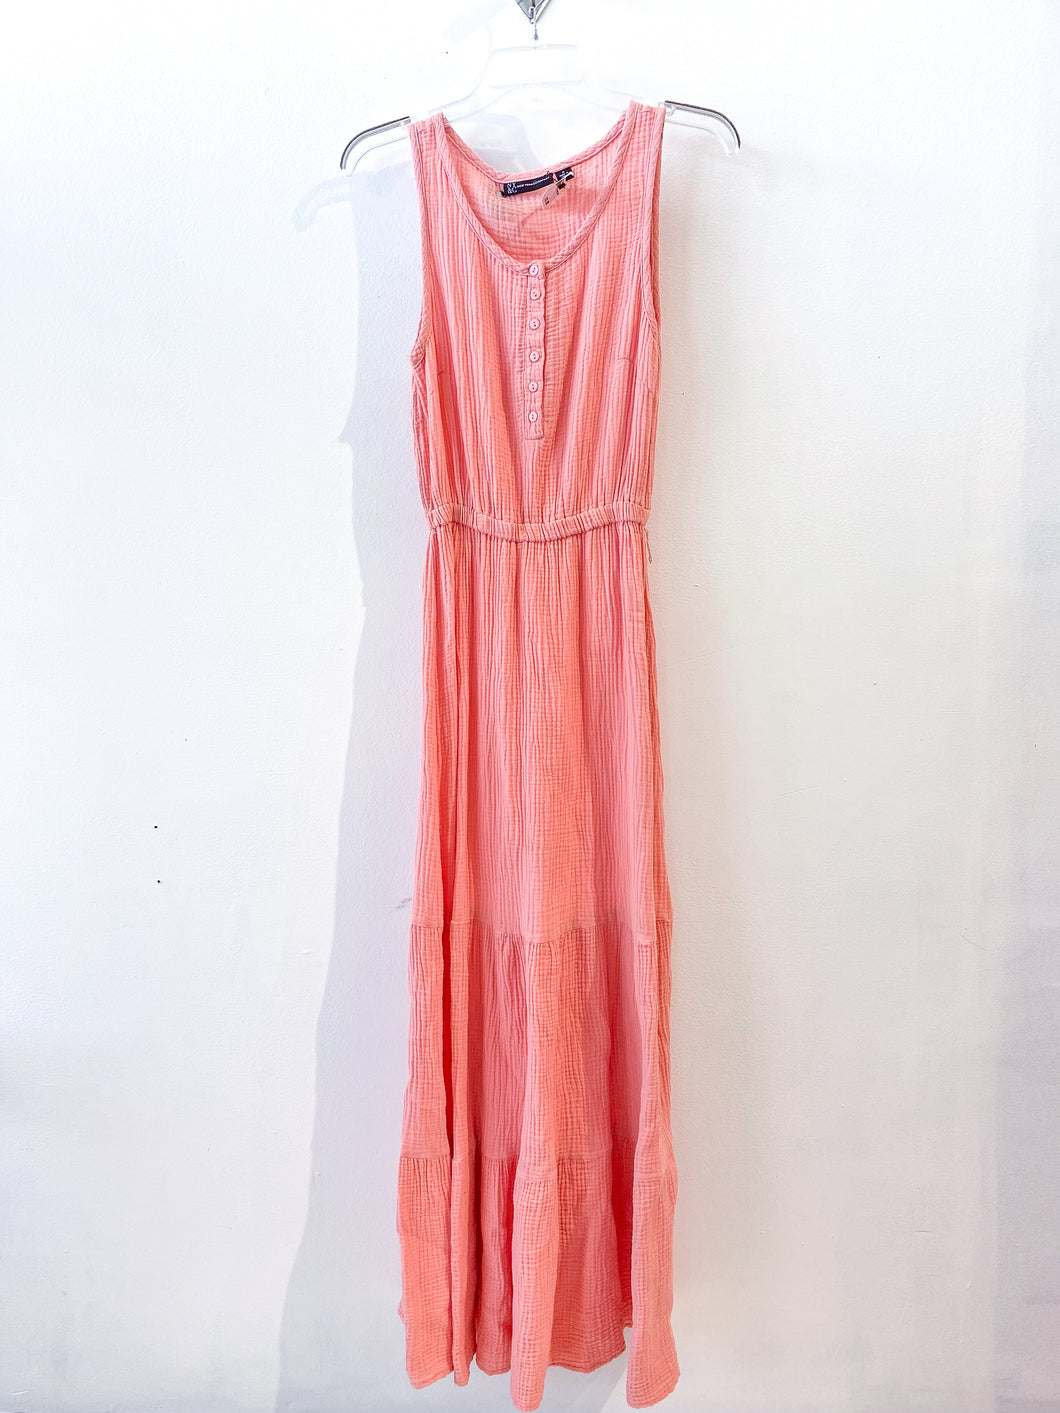 Ny & Co Maxi Dress Size Small P0150